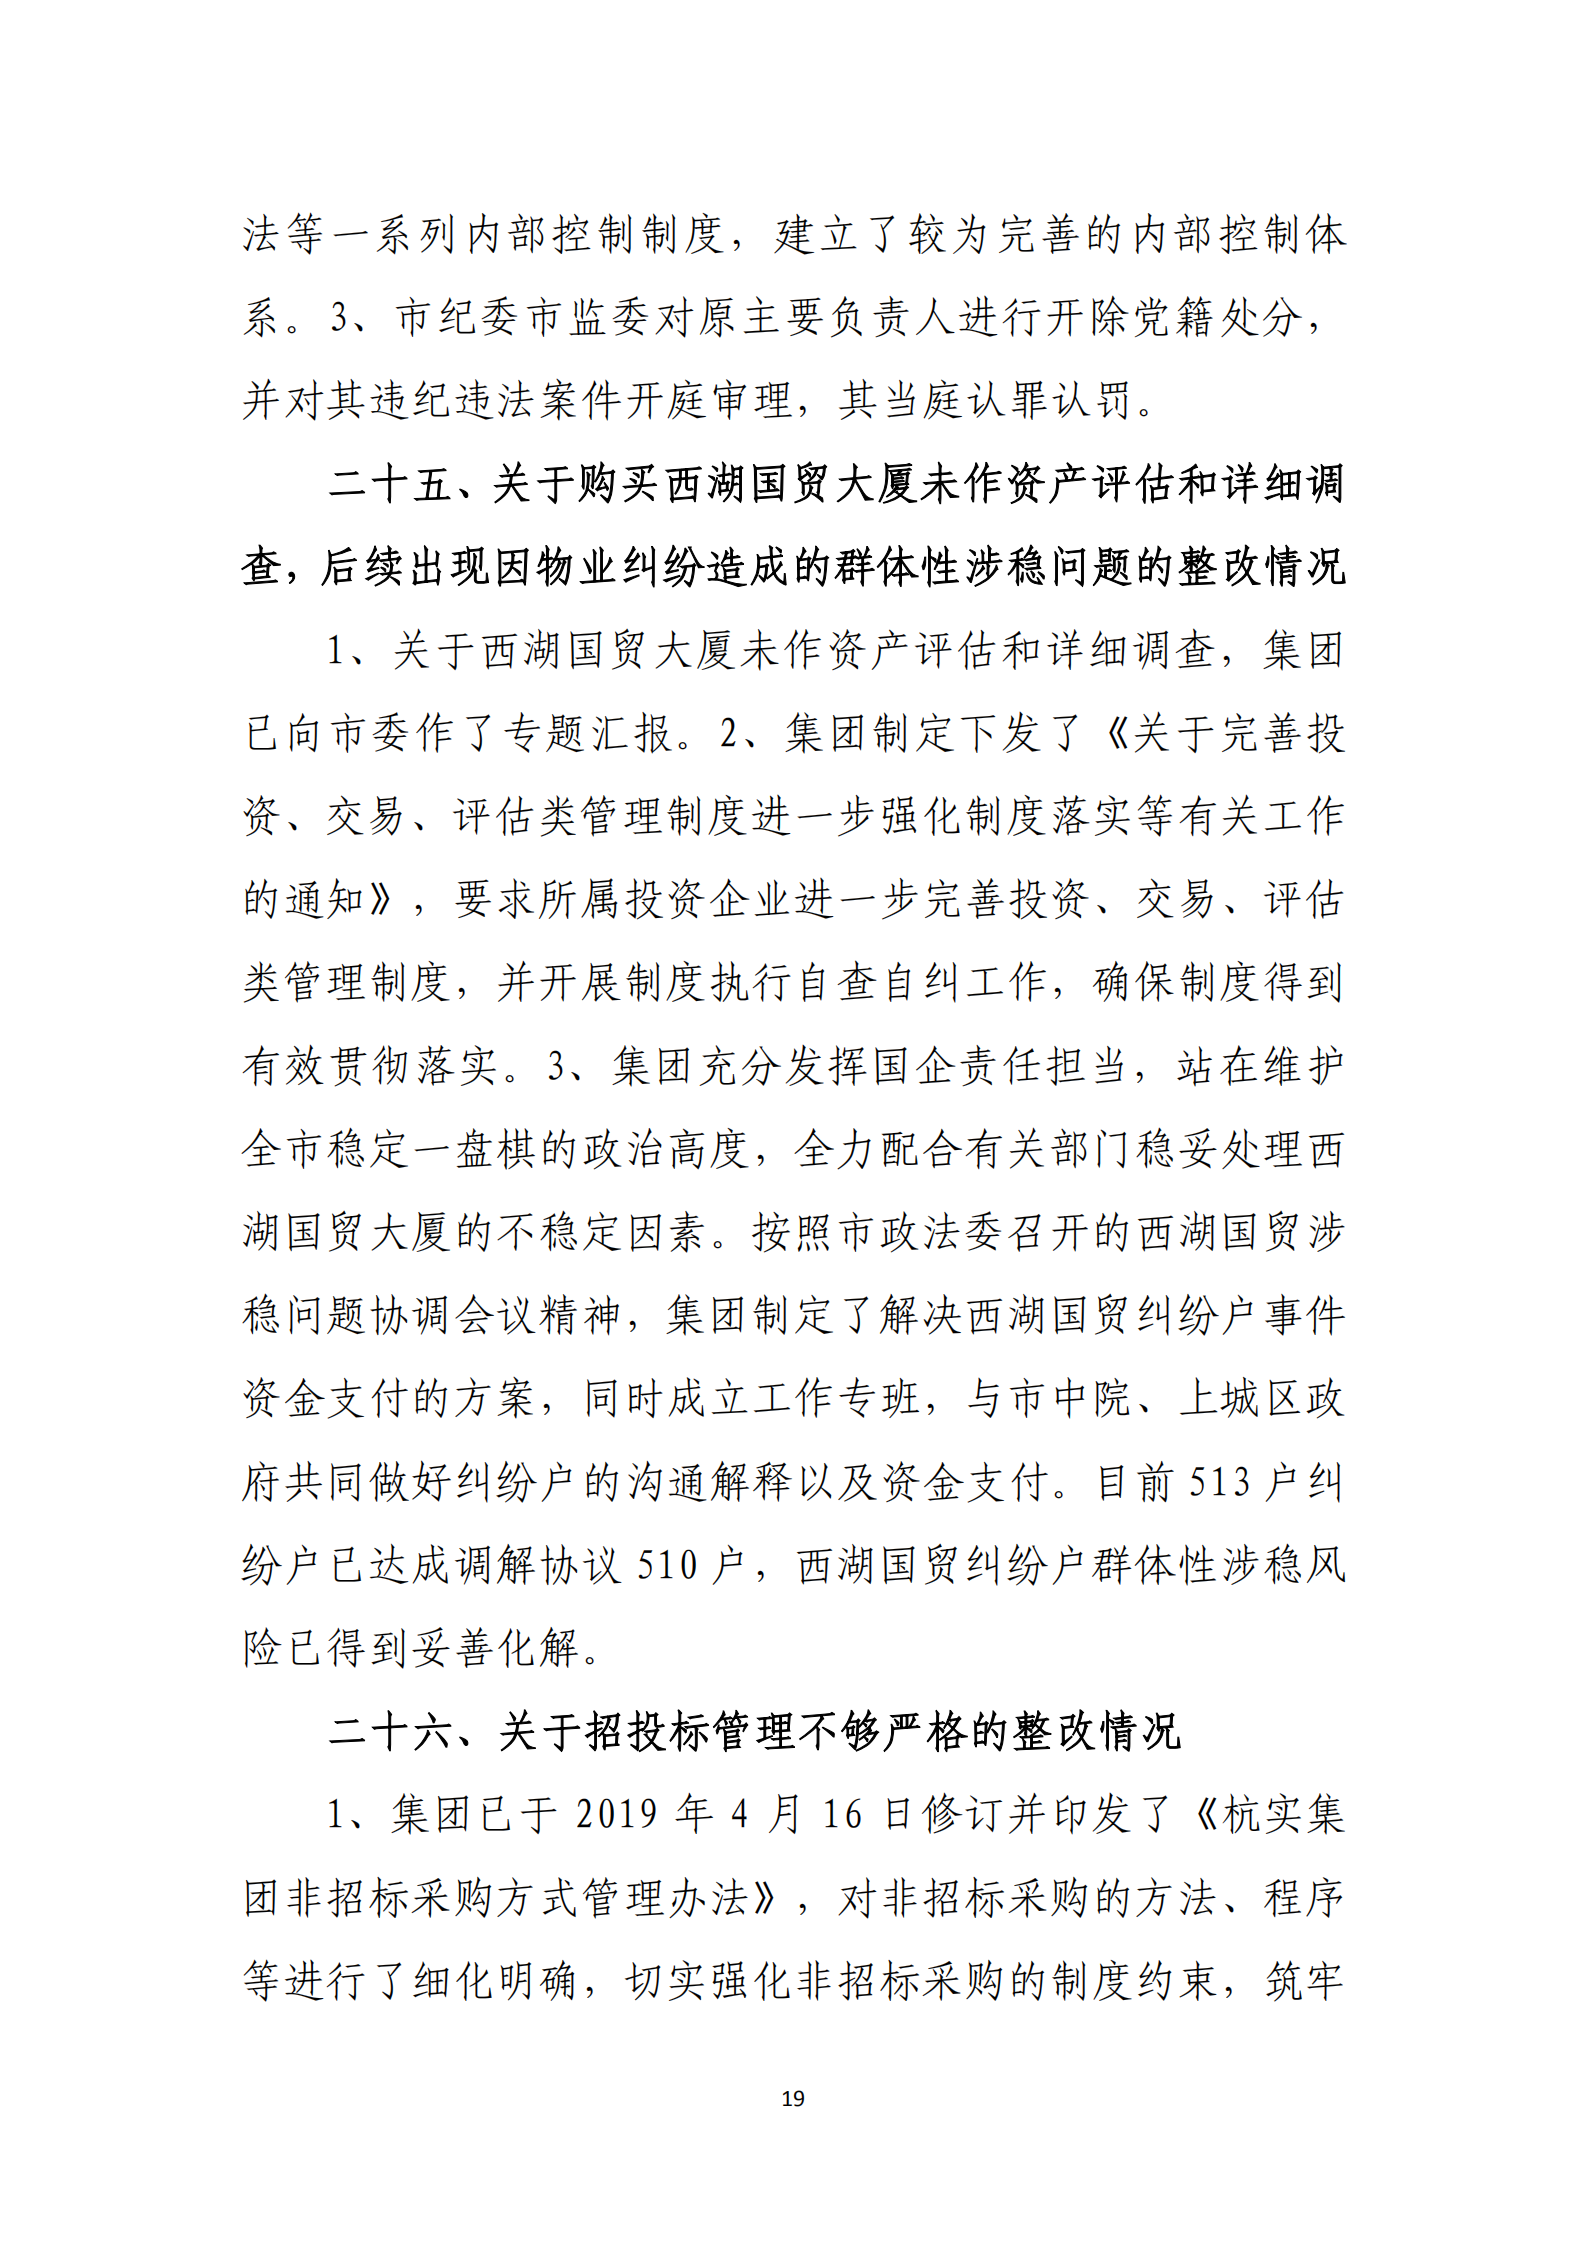 乐虎国际游戏官网党委关于巡察整改情况的通报_18.png